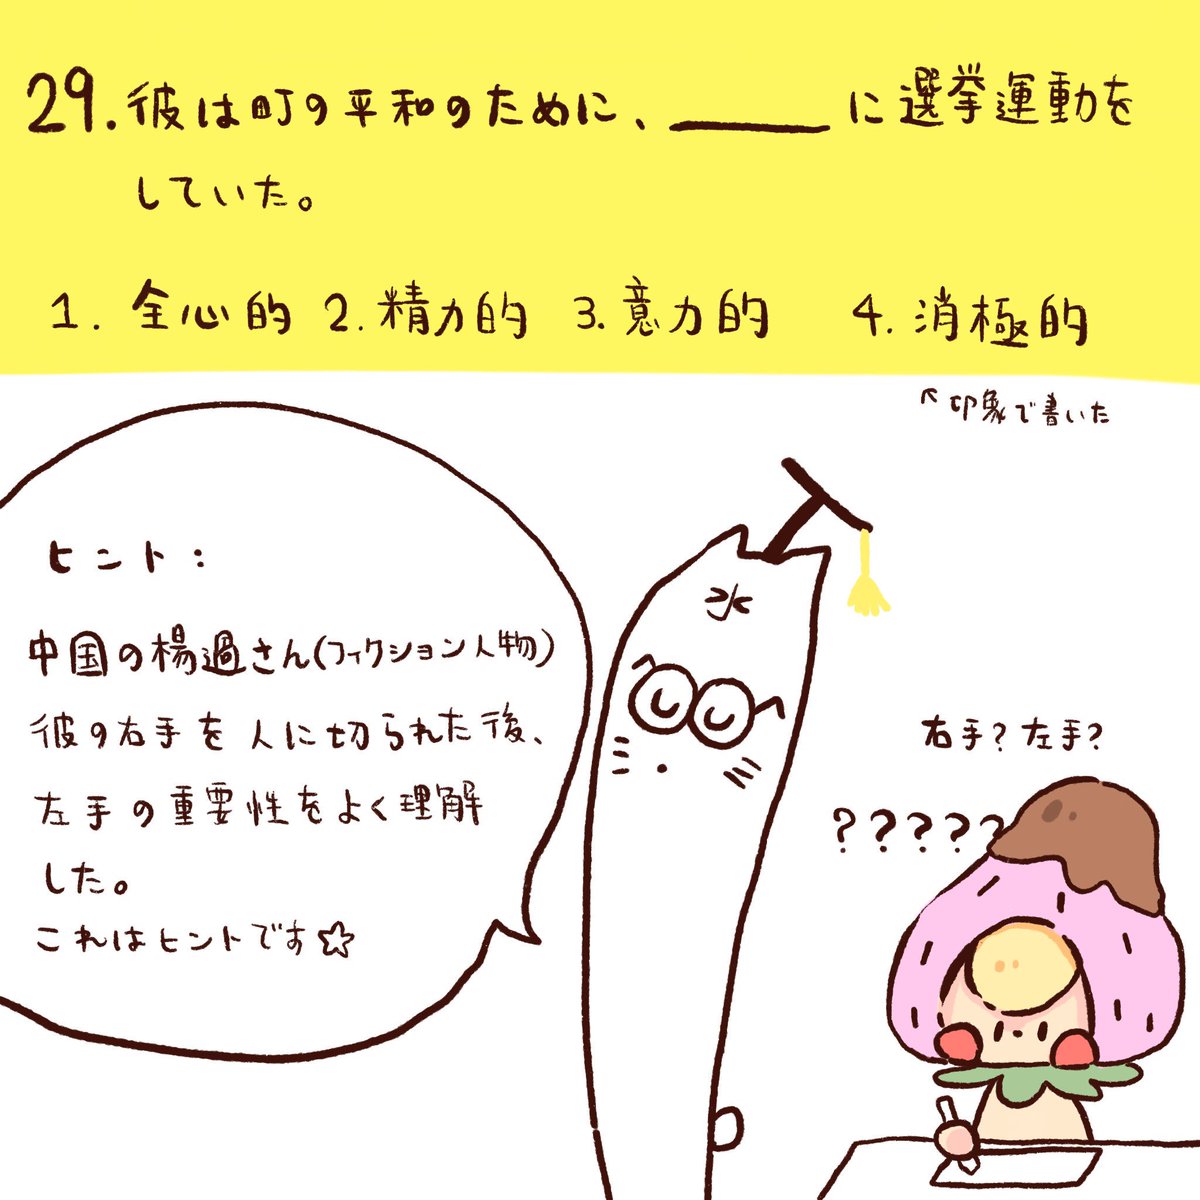 ササクラ En Twitter 日本語テスト 先生の思考回路がちょっと変わっているけど とても面白い人です イラスト 絵 絵描き かわいい 癒し いちご 日本語 メーとスズメの友達